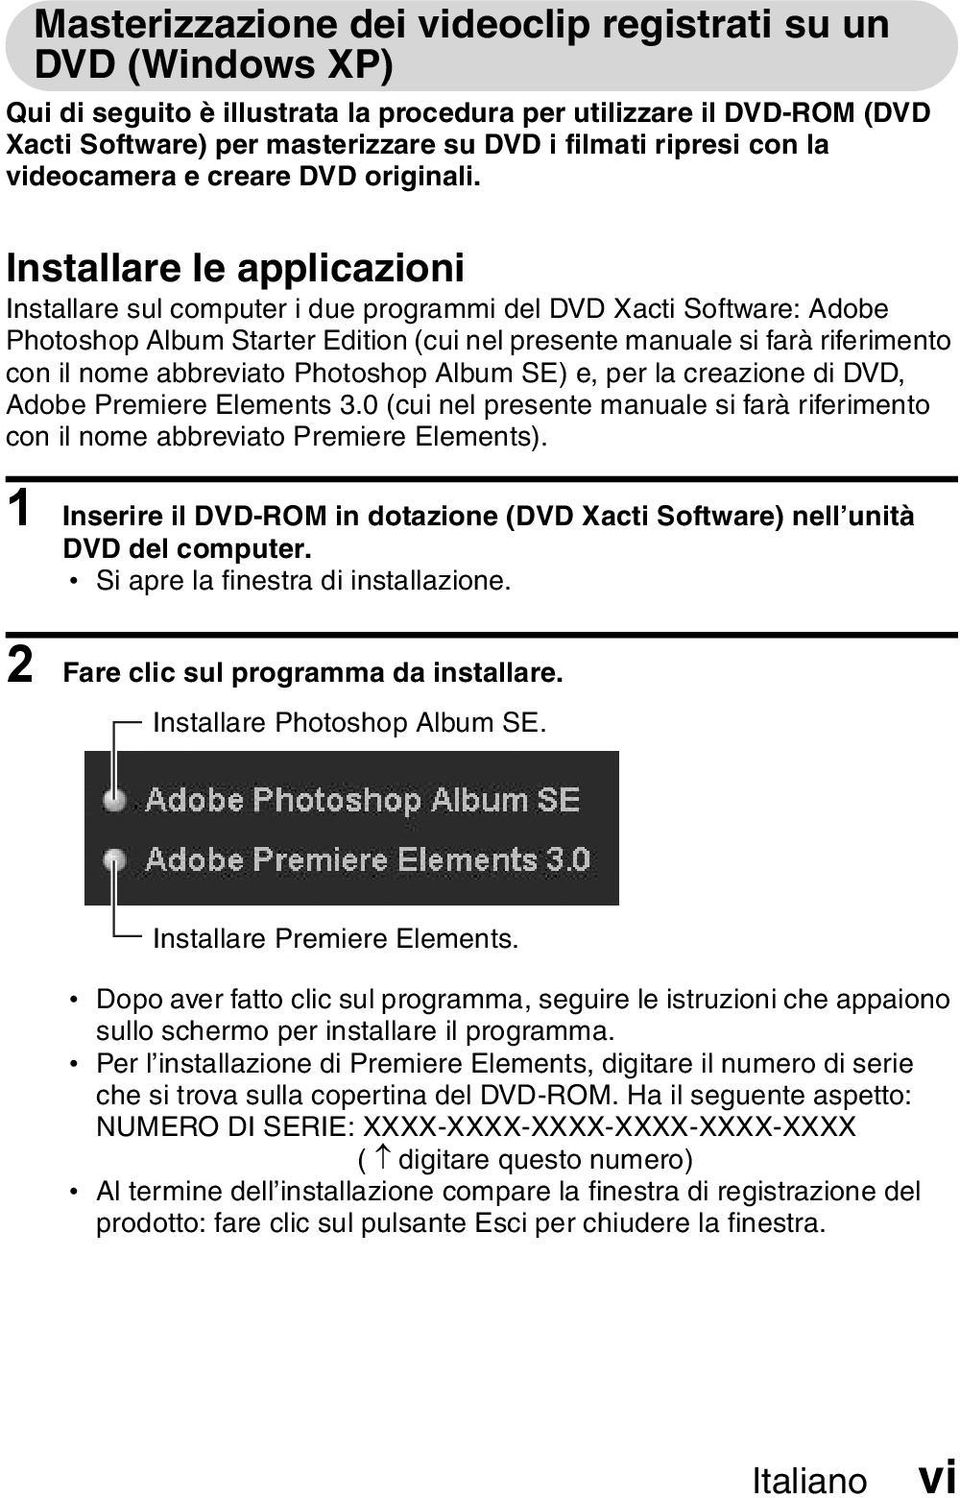 Installare le applicazioni Installare sul computer i due programmi del DVD Xacti Software: Adobe Photoshop Album Starter Edition (cui nel presente manuale si farà riferimento con il nome abbreviato